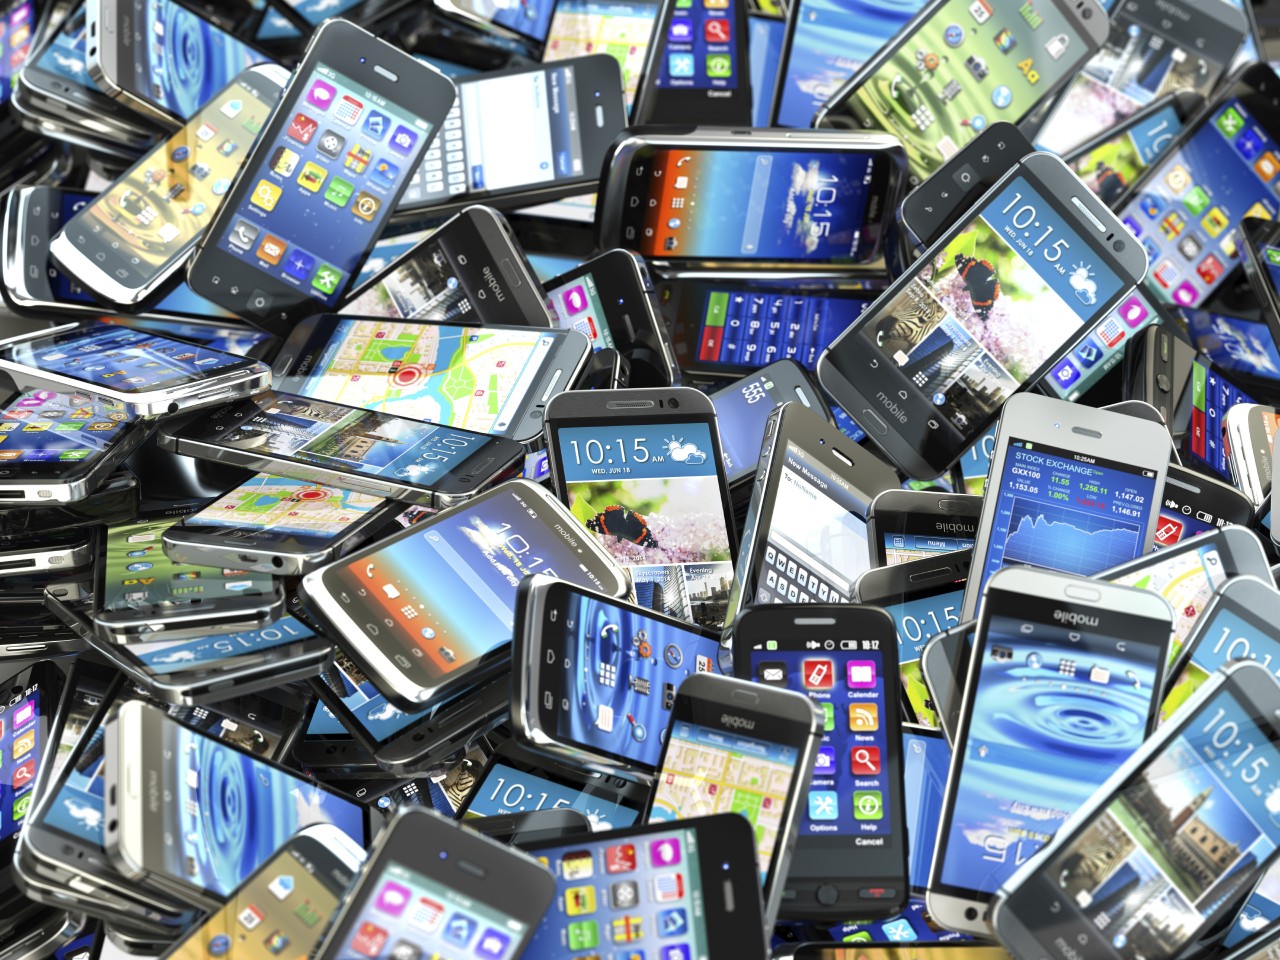 Le spedizioni di smartphone sono in calo anche nel 2016, per non parlare di quelle dei tablet... (foto)